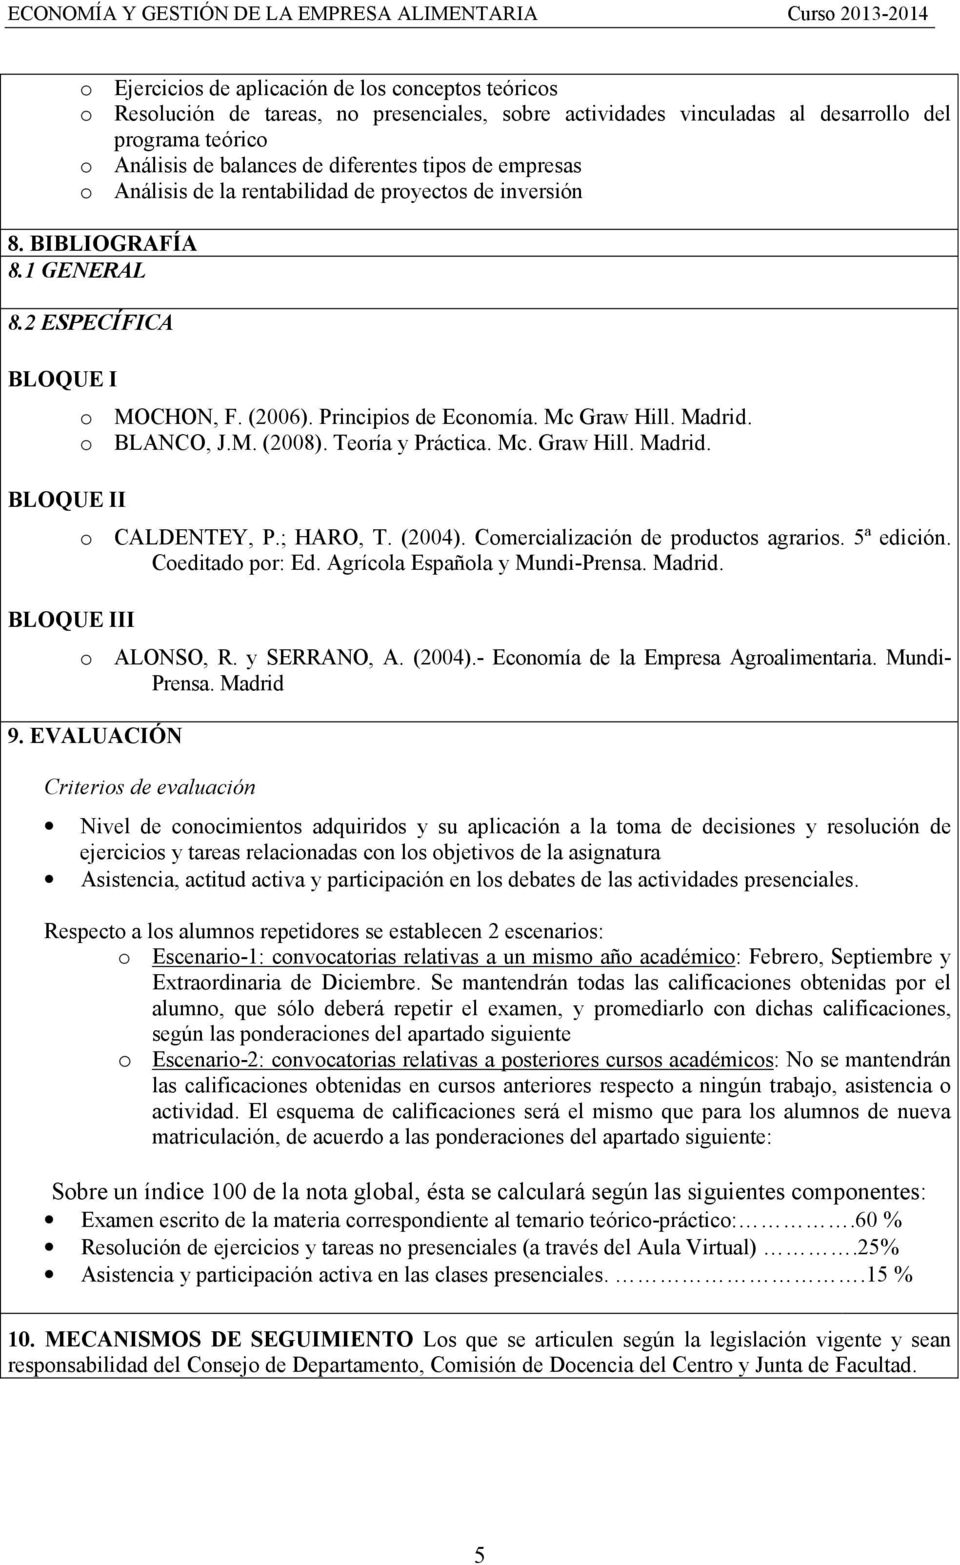 Mc Graw Hill. Madrid. o BLANCO, J.M. (2008). Teoría y Práctica. Mc. Graw Hill. Madrid. o CALDENTEY, P.; HARO, T. (2004). Comercialización de productos agrarios. 5ª edición. Coeditado por: Ed.